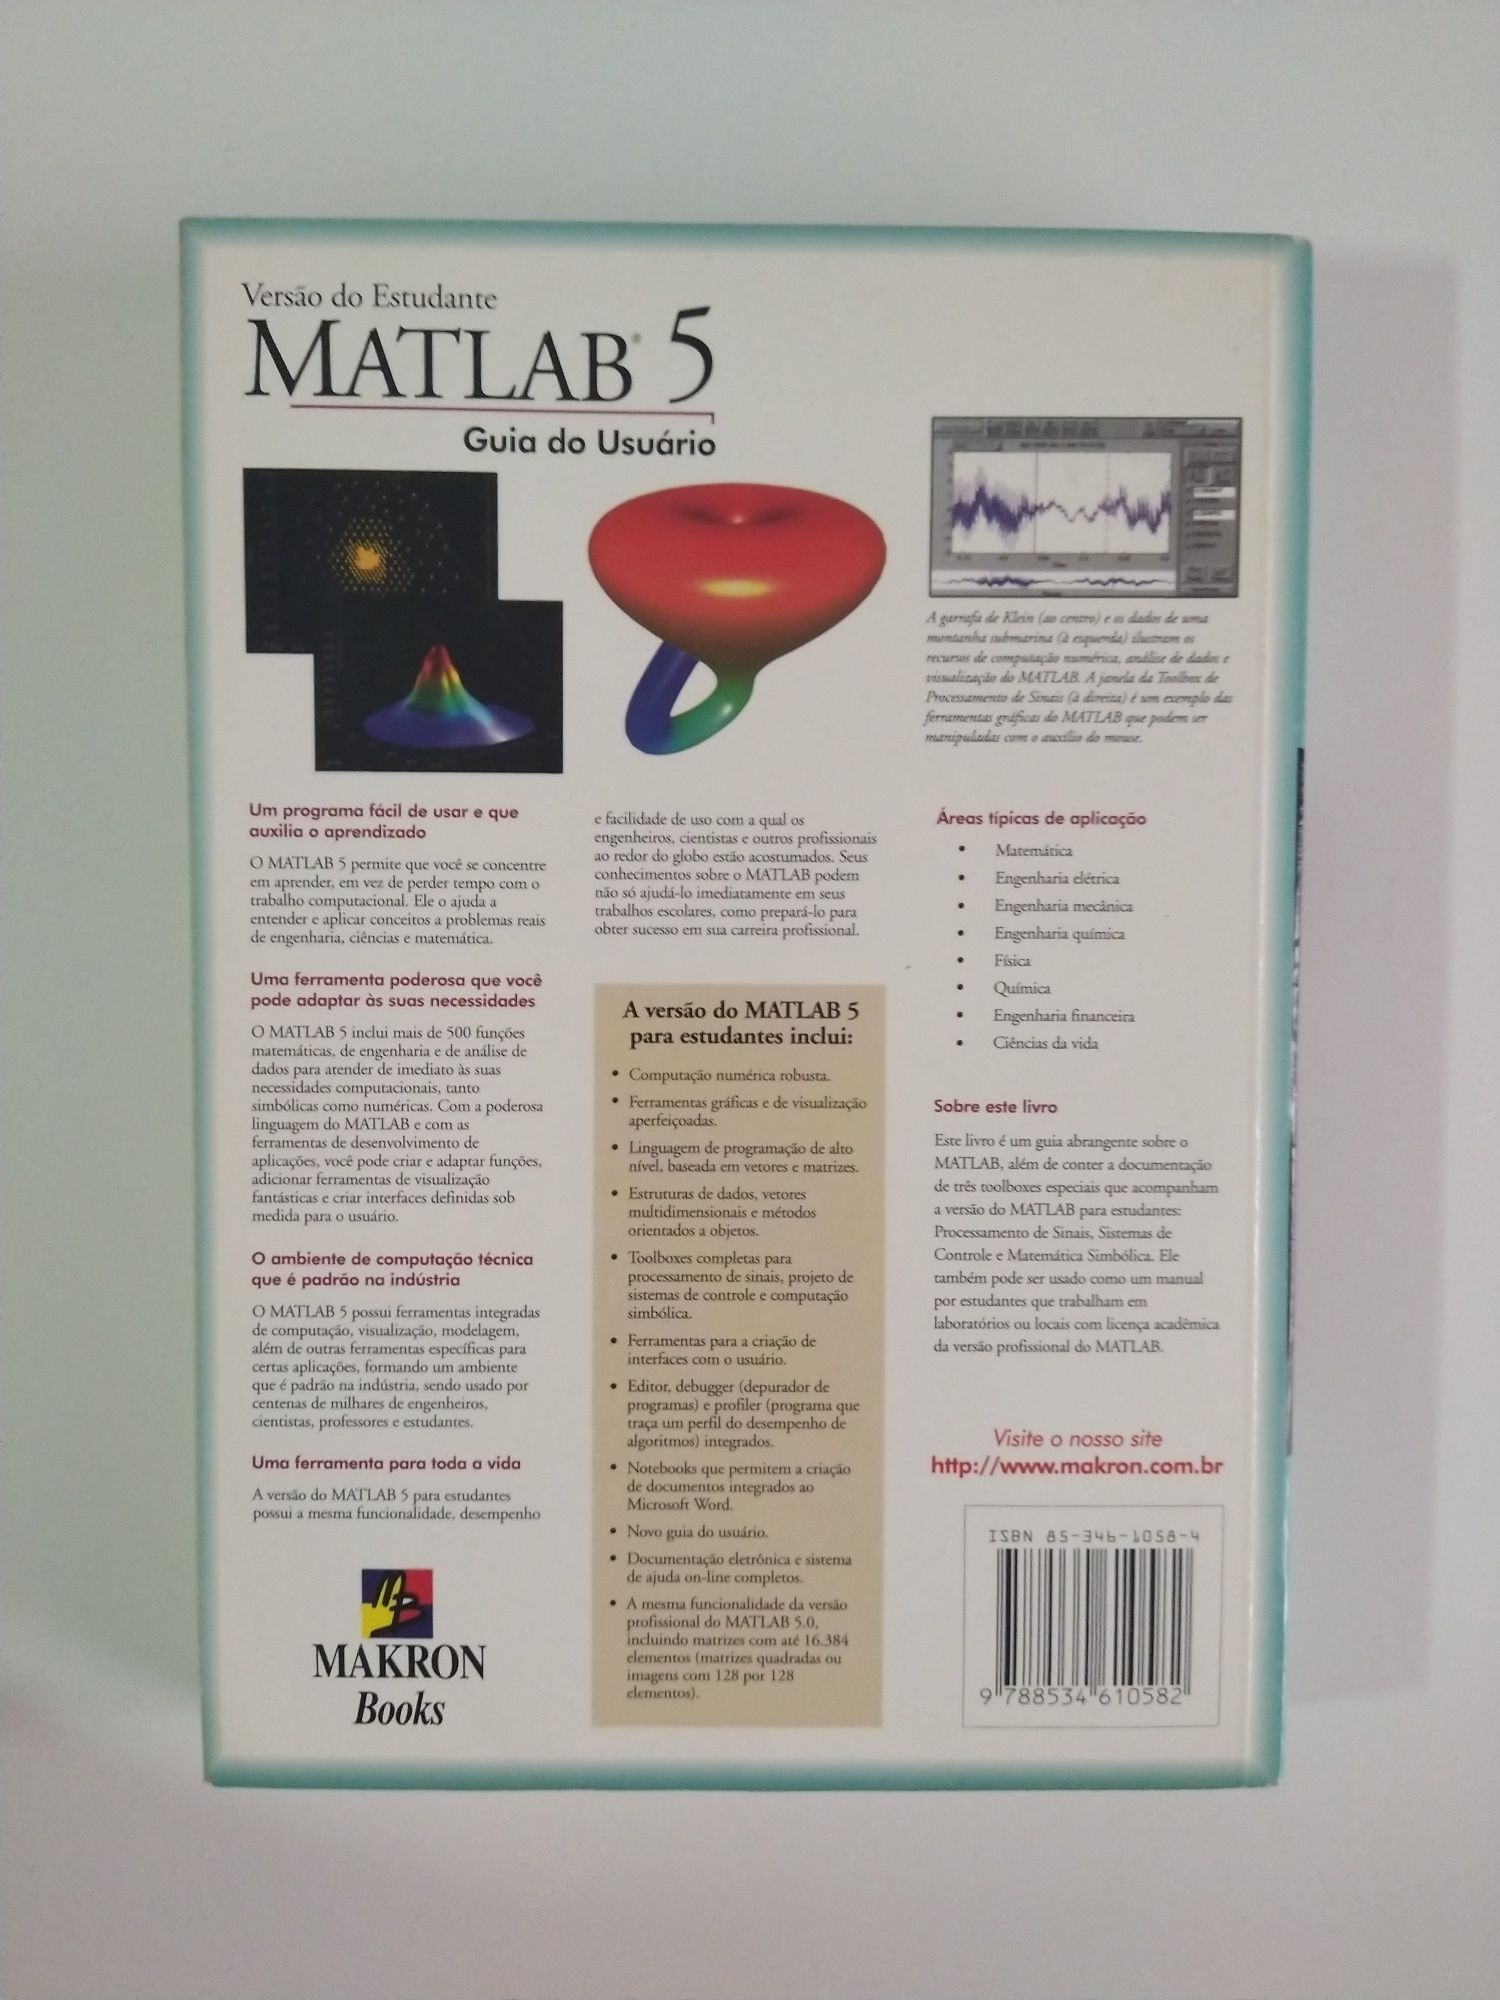 Livro Matlab 5, versão do estudante, de Duane Hanselman